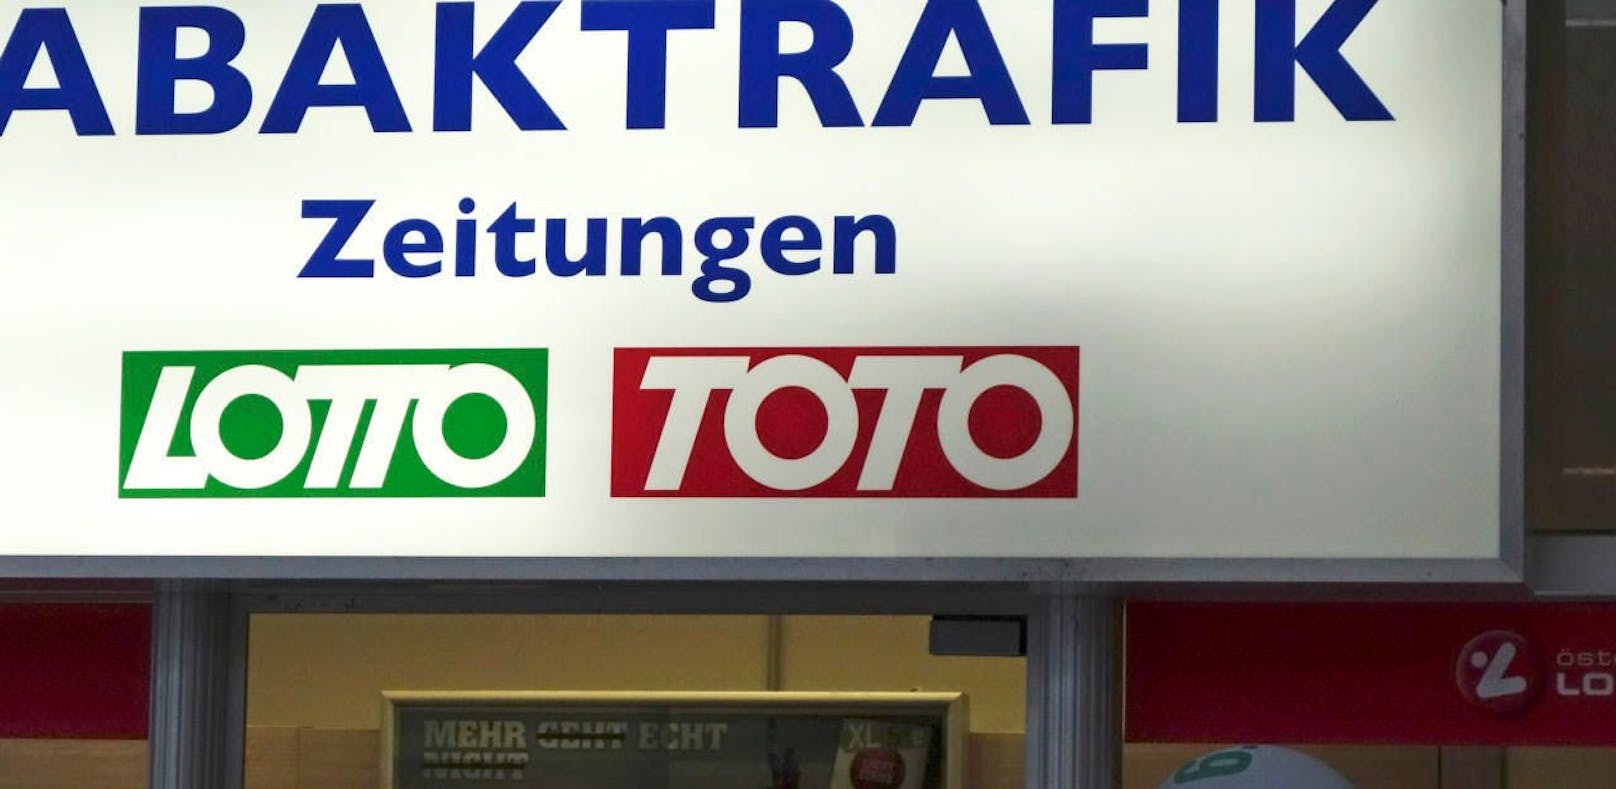 Beim Toto geht es erstmals um einen Siebenfach-Jackpot von 110.000 Euro.